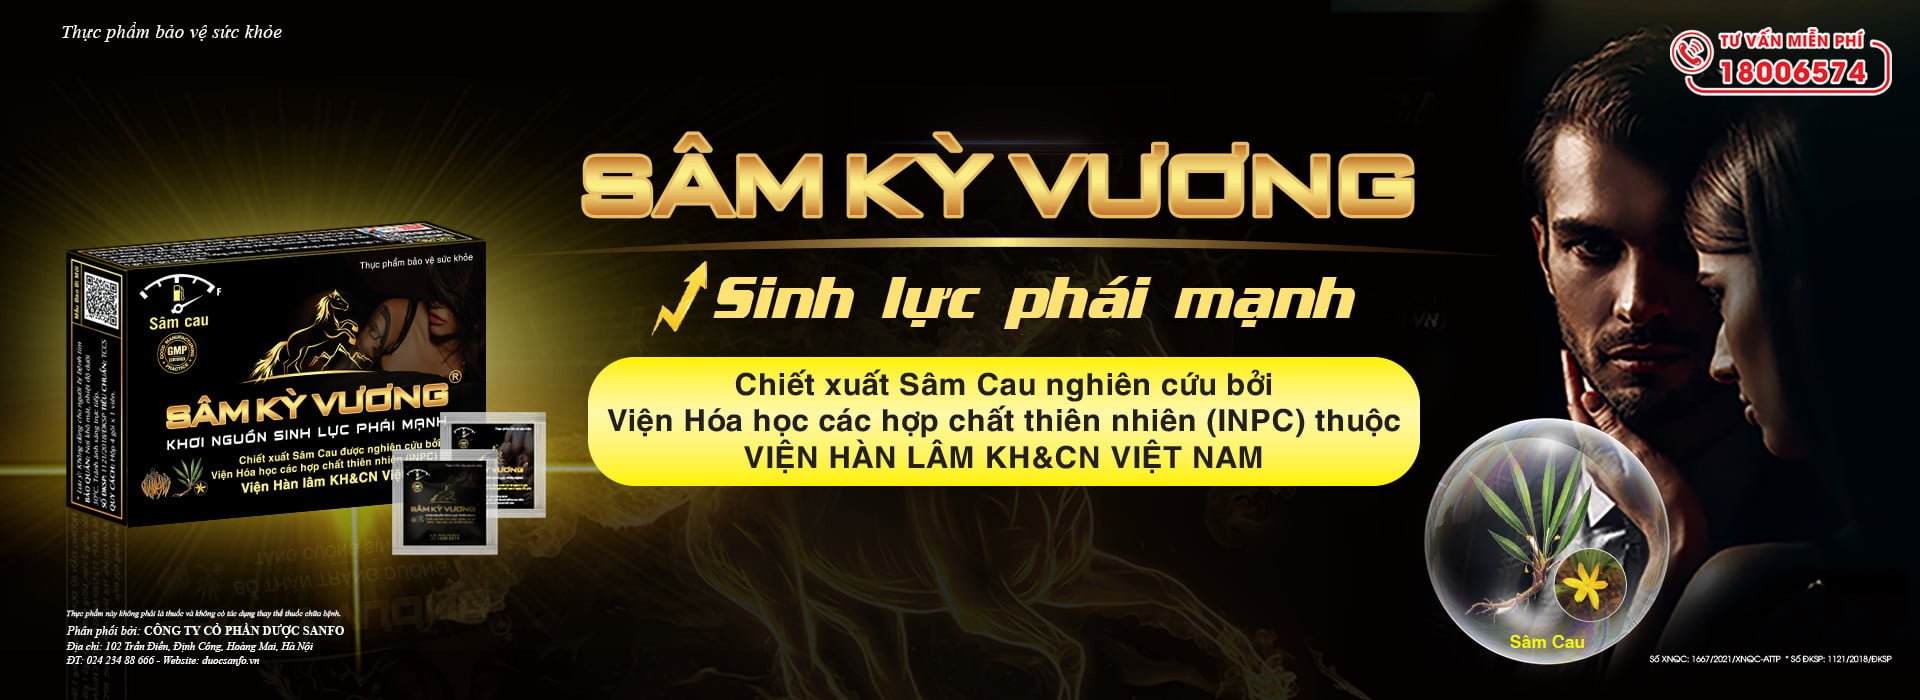 BS.TS Nguyễn Hồng Siêm – Chủ tịch Hôi đông y Việt Nam đánh giá cao về Sâm Kỳ Vương – bí quyết hỗ trợ tăng cường sinh lực phái mạnh